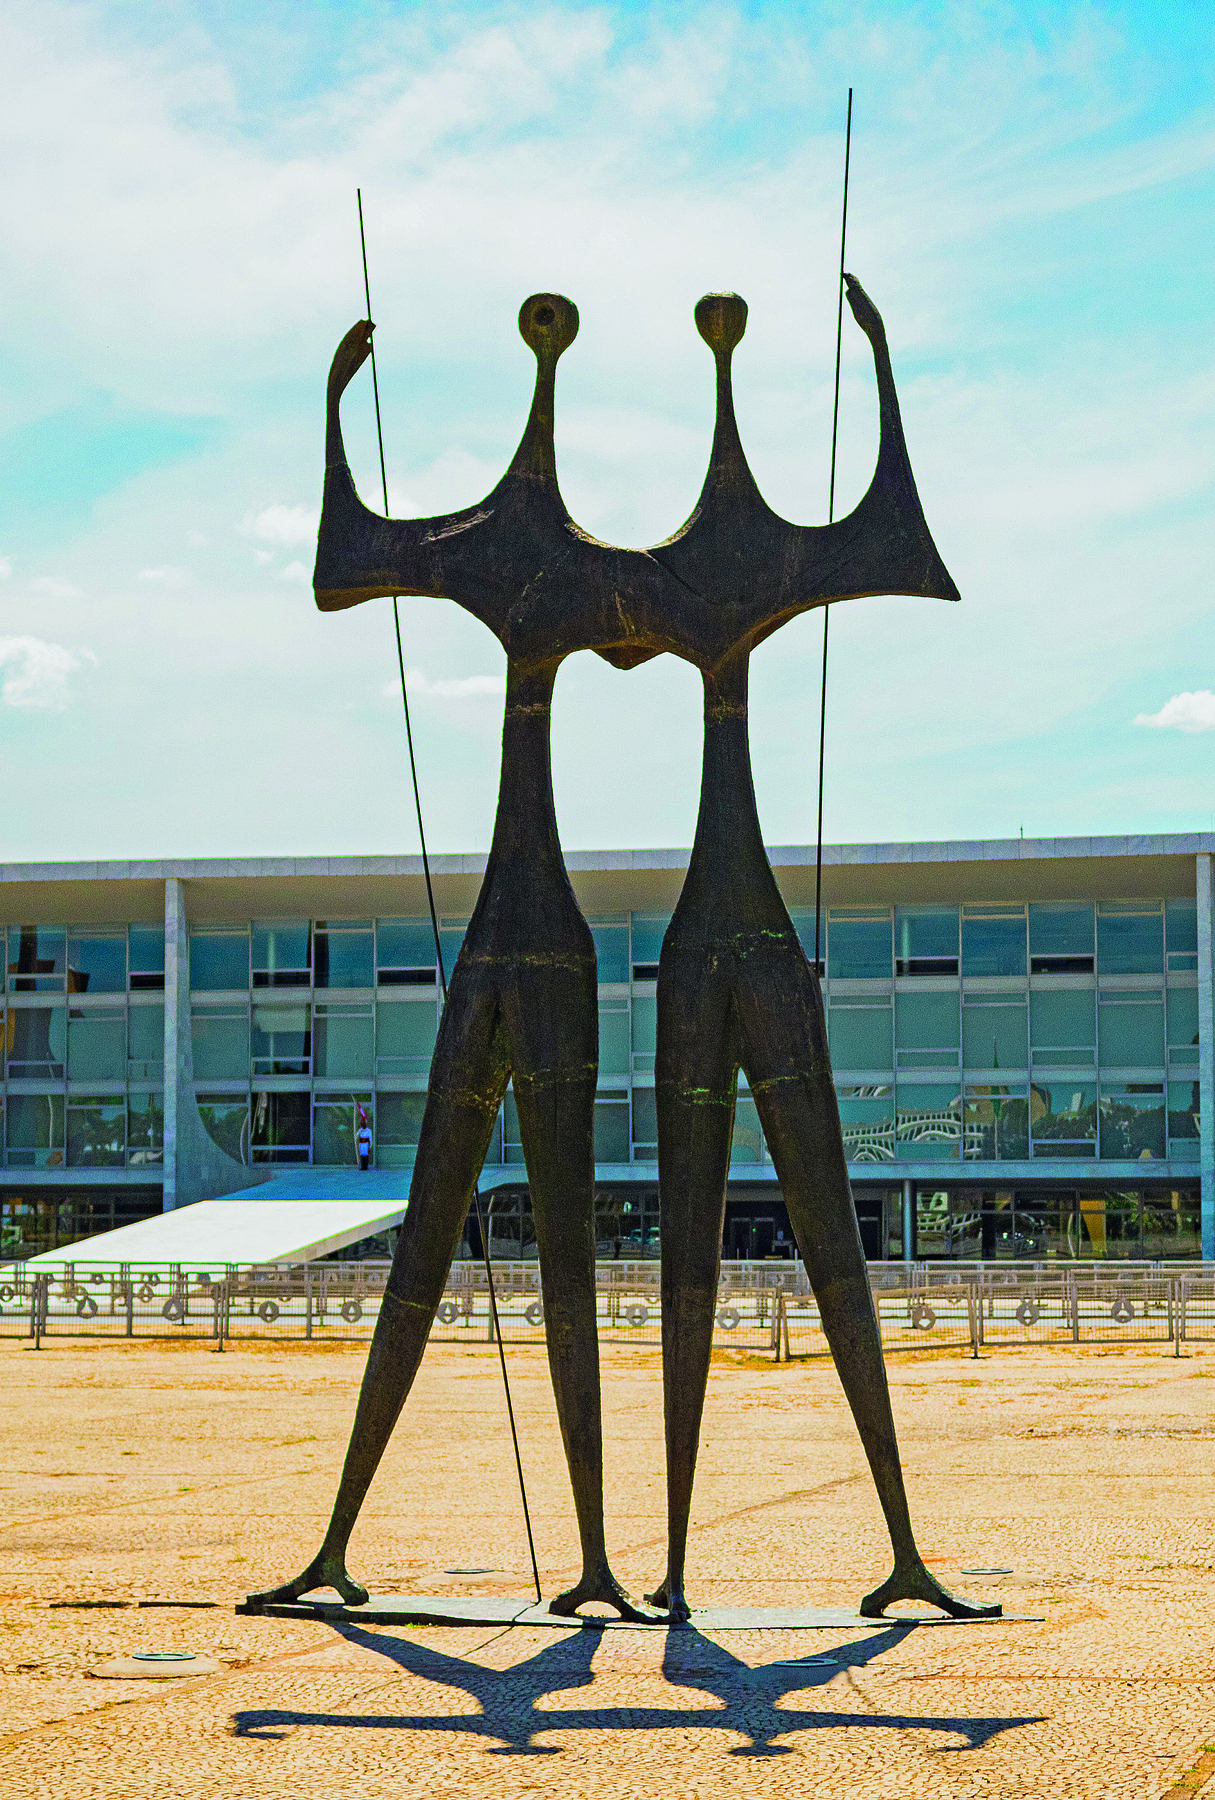 Fotografia. Em uma praça, diante de uma construção de janelas envidraçadas, uma escultura retratando dois personagens de aspectos humanos, em pé, com os braços dados, portando uma haste cada um.